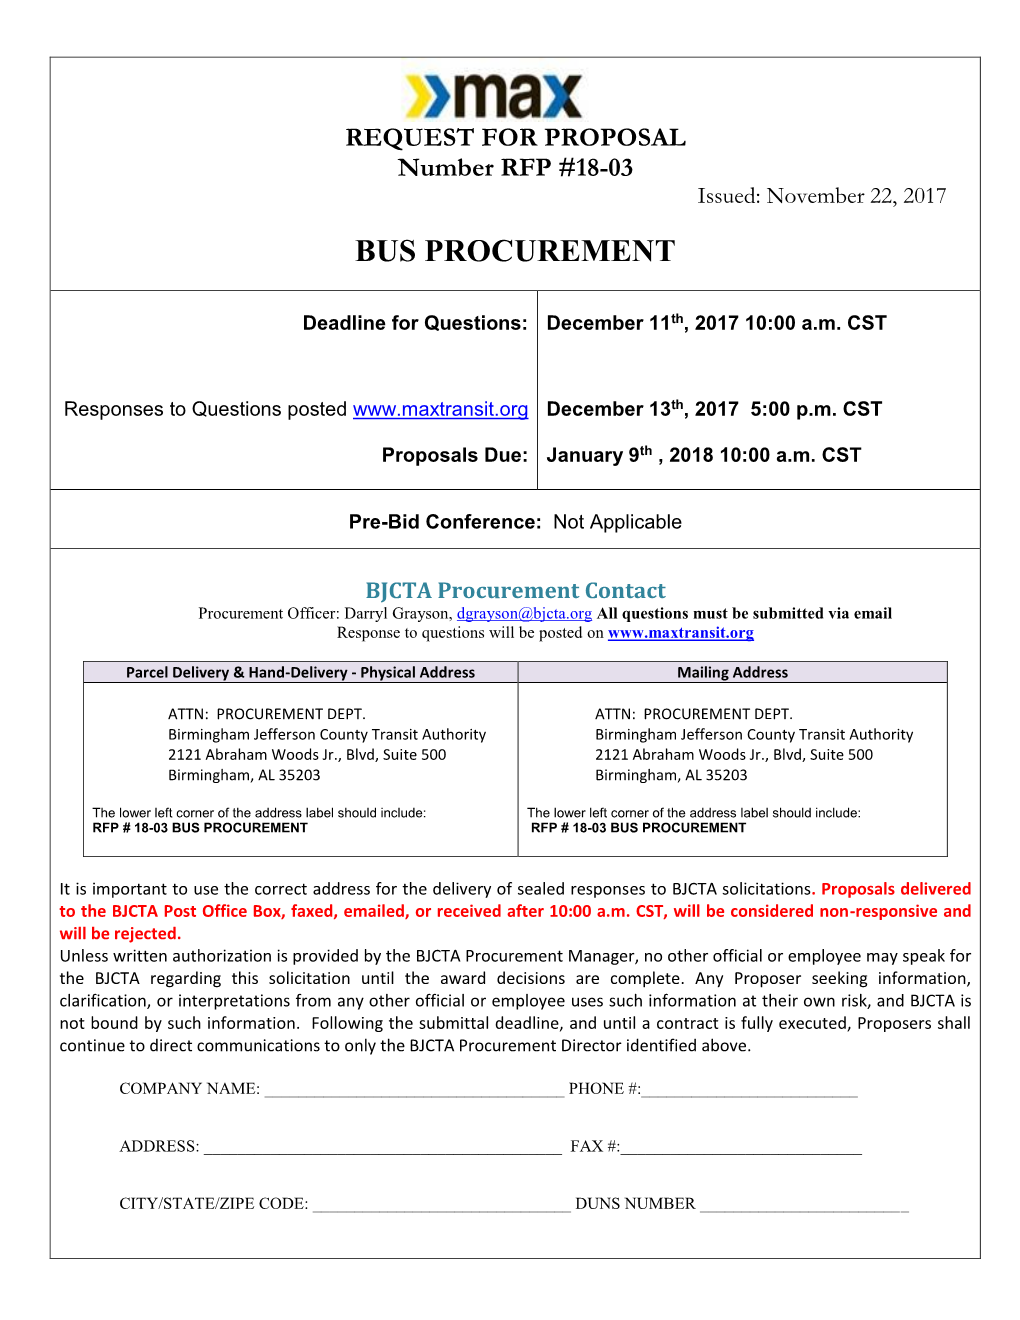 RFP #18-03 Bus Procurement